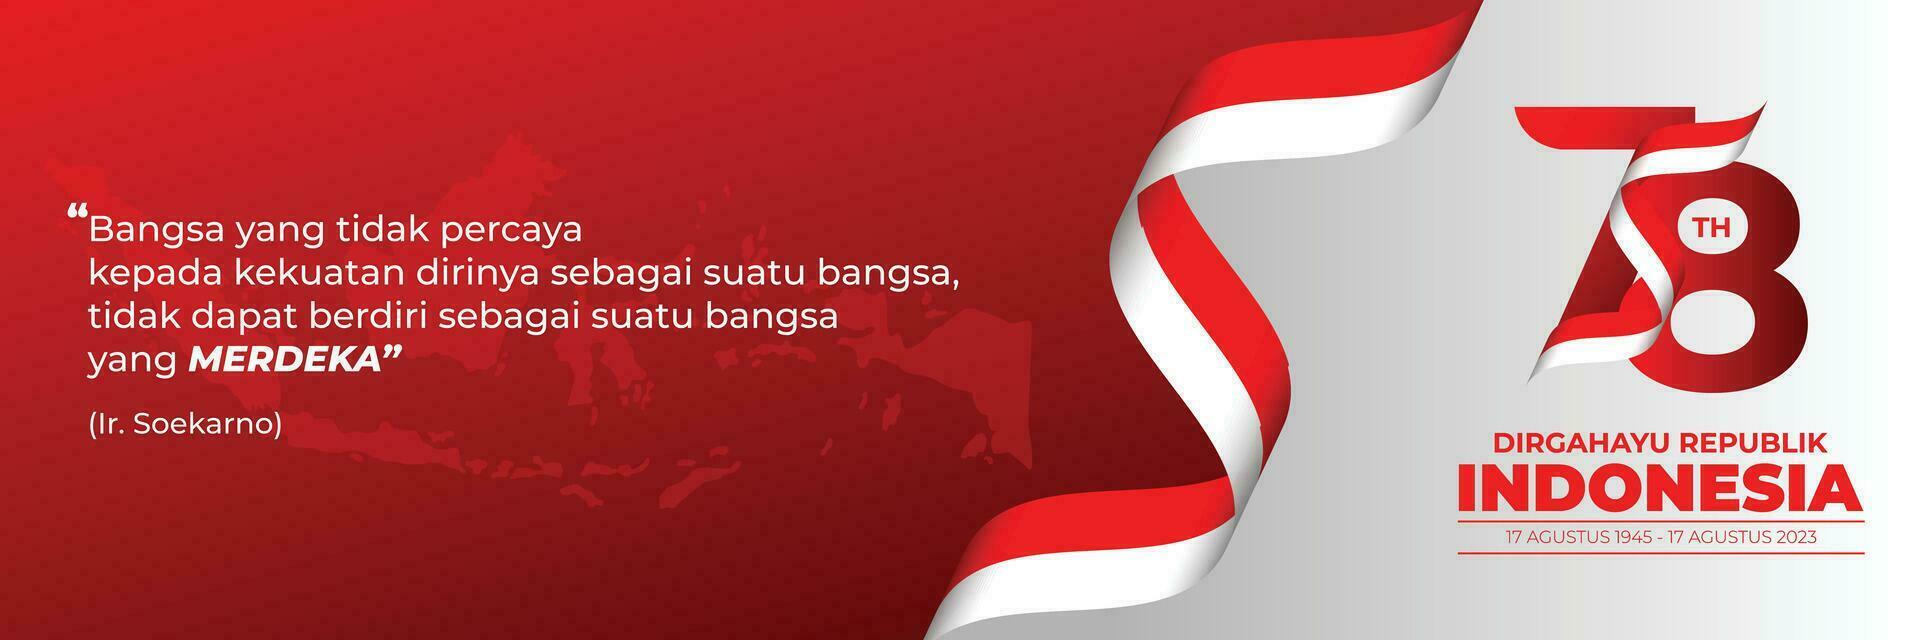 plantilla de banner de dirgahayu republik indonesia vector